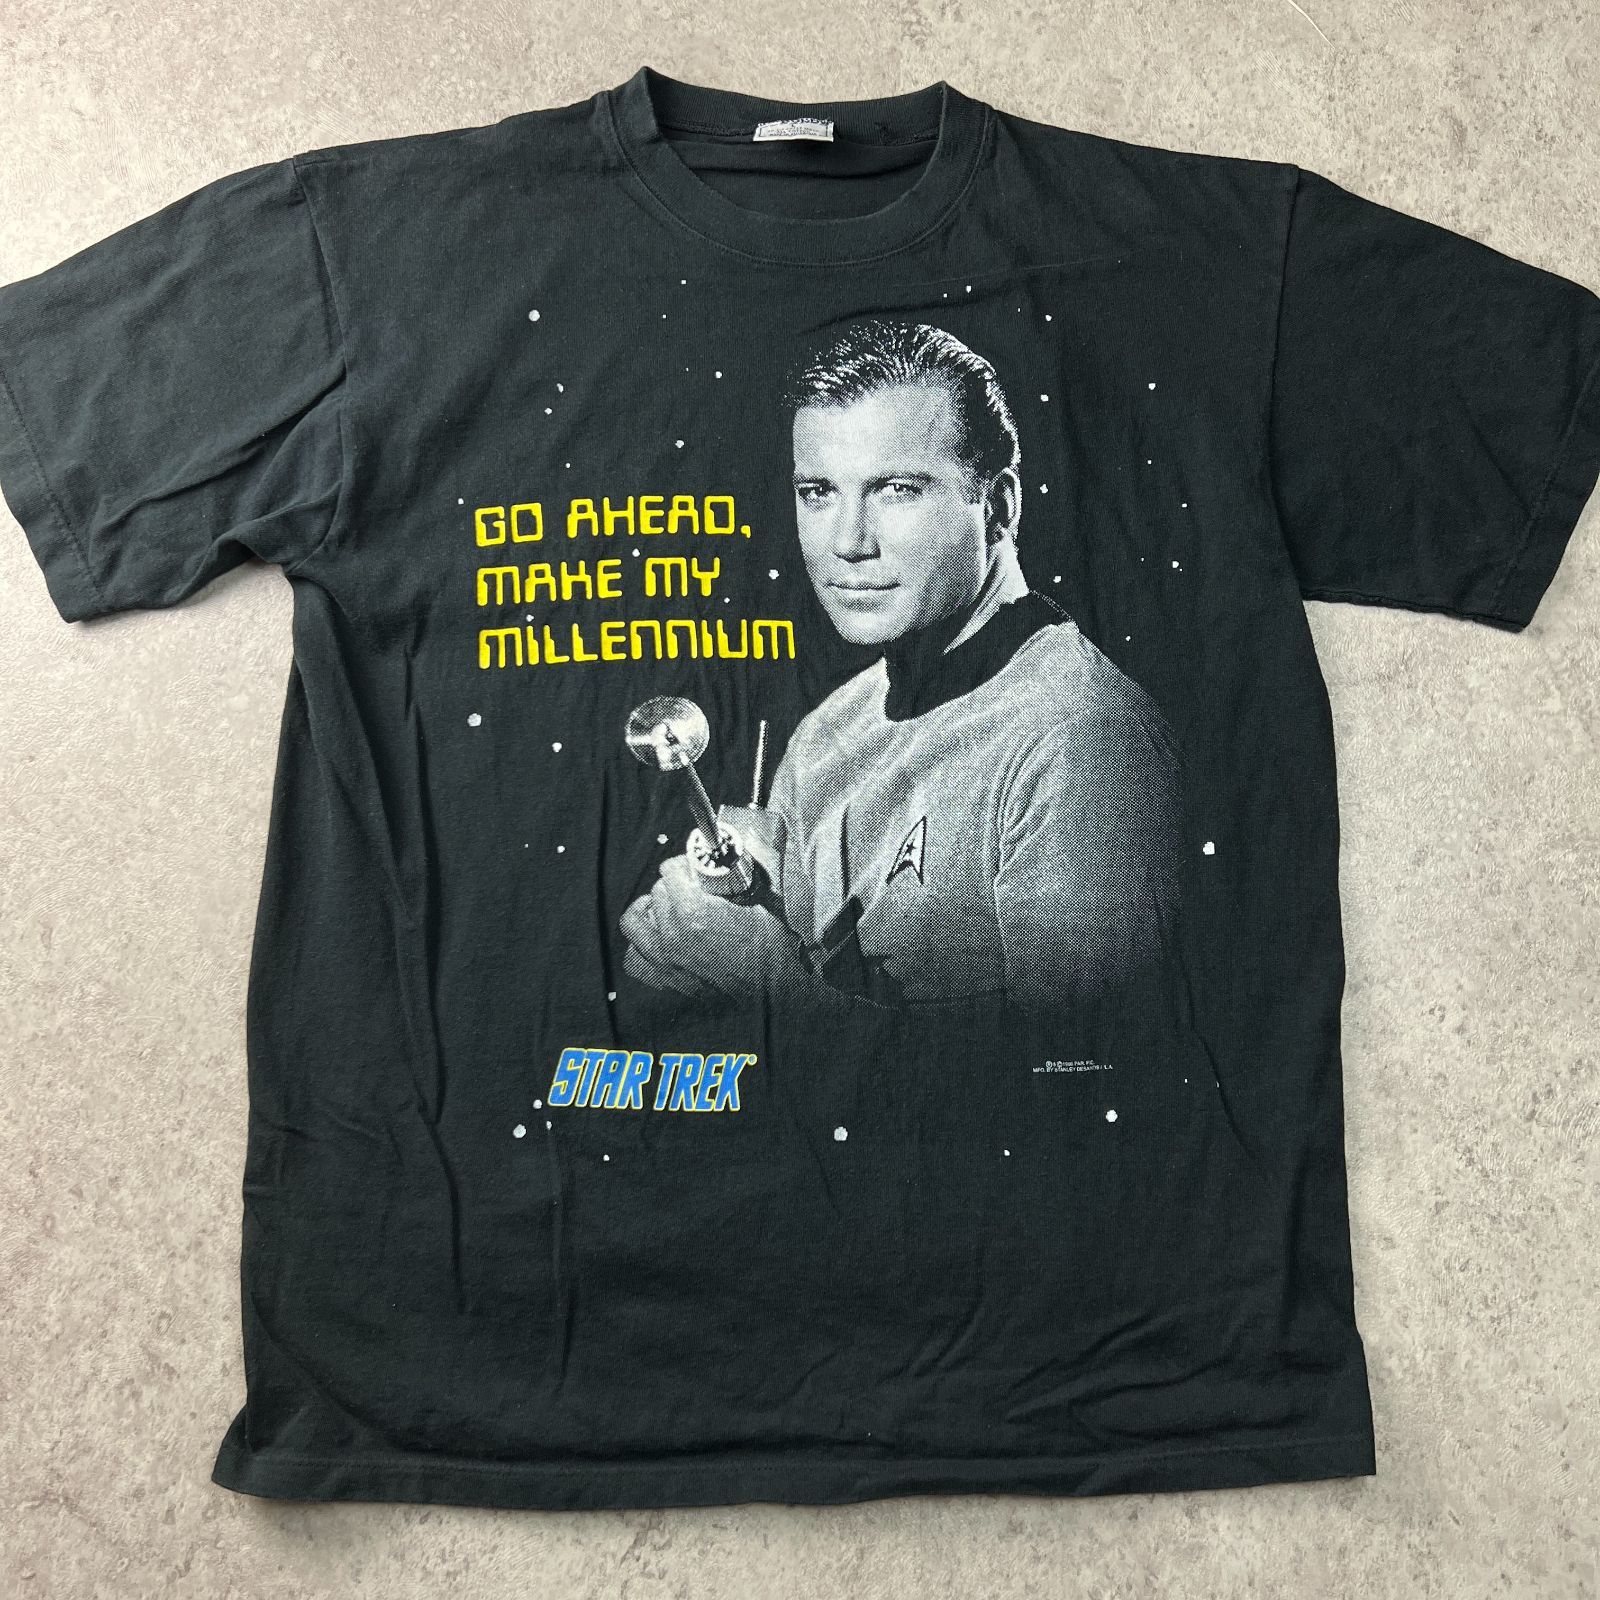 レア STAR TREK スタートレック コピーライト 1996 T Tシャツ 